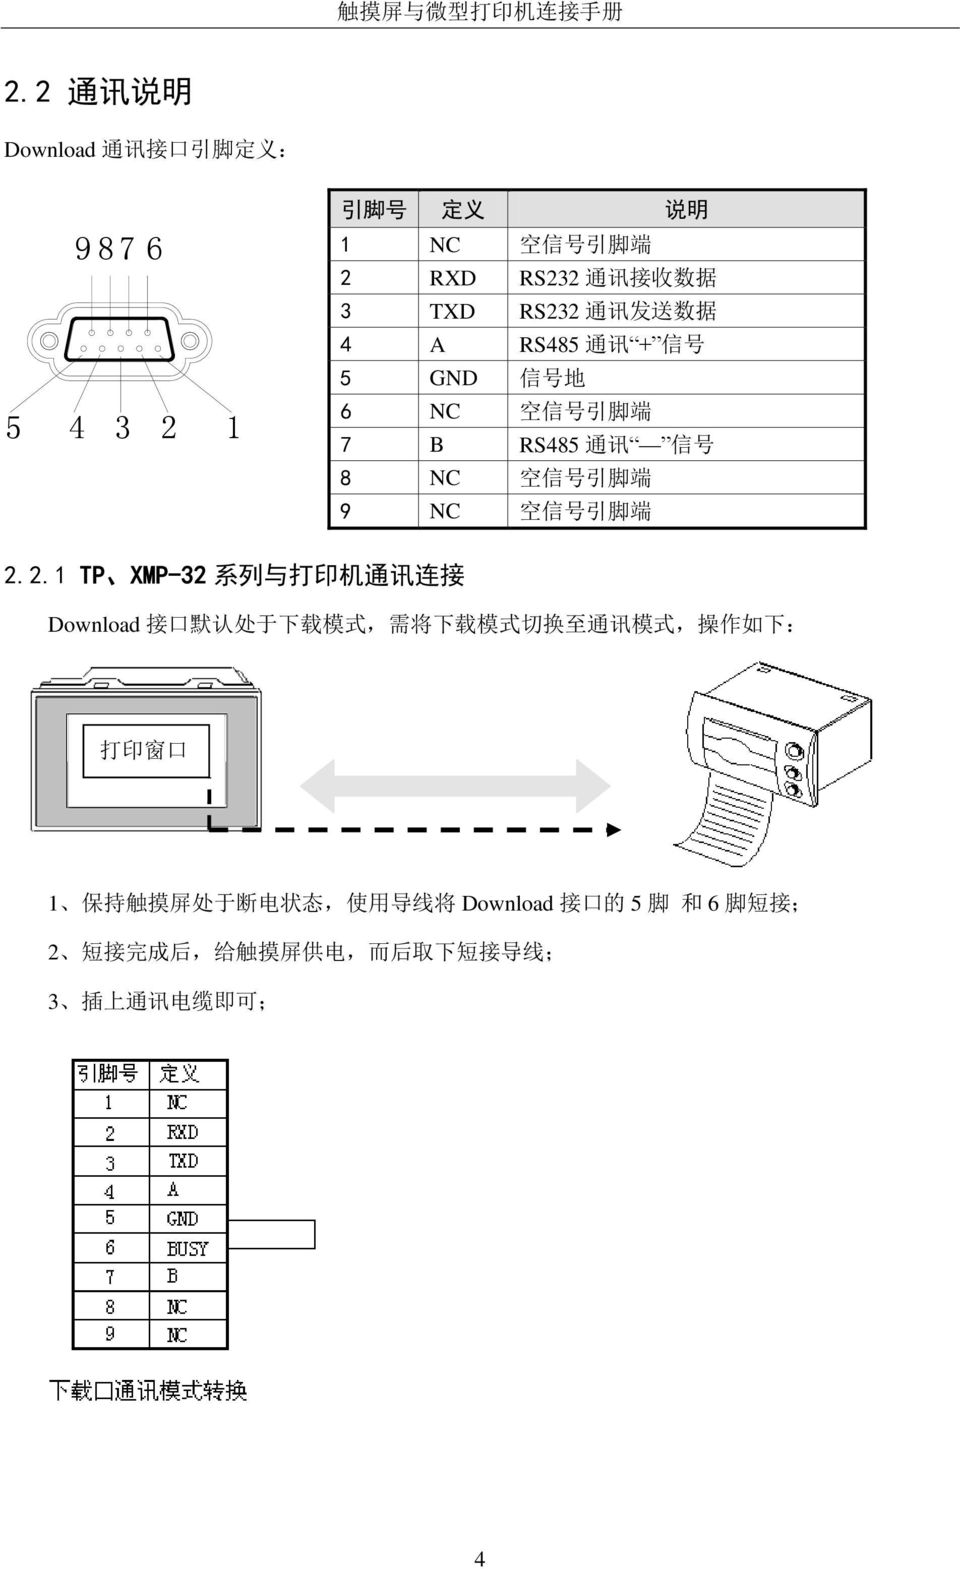 2.1 TP XMP-32 系 列 与 打 印 机 通 讯 连 接 Download 接 口 默 认 处 于 下 载 模 式, 需 将 下 载 模 式 切 换 至 通 讯 模 式, 操 作 如 下 : 打 印 窗 口 1 保 持 触 摸